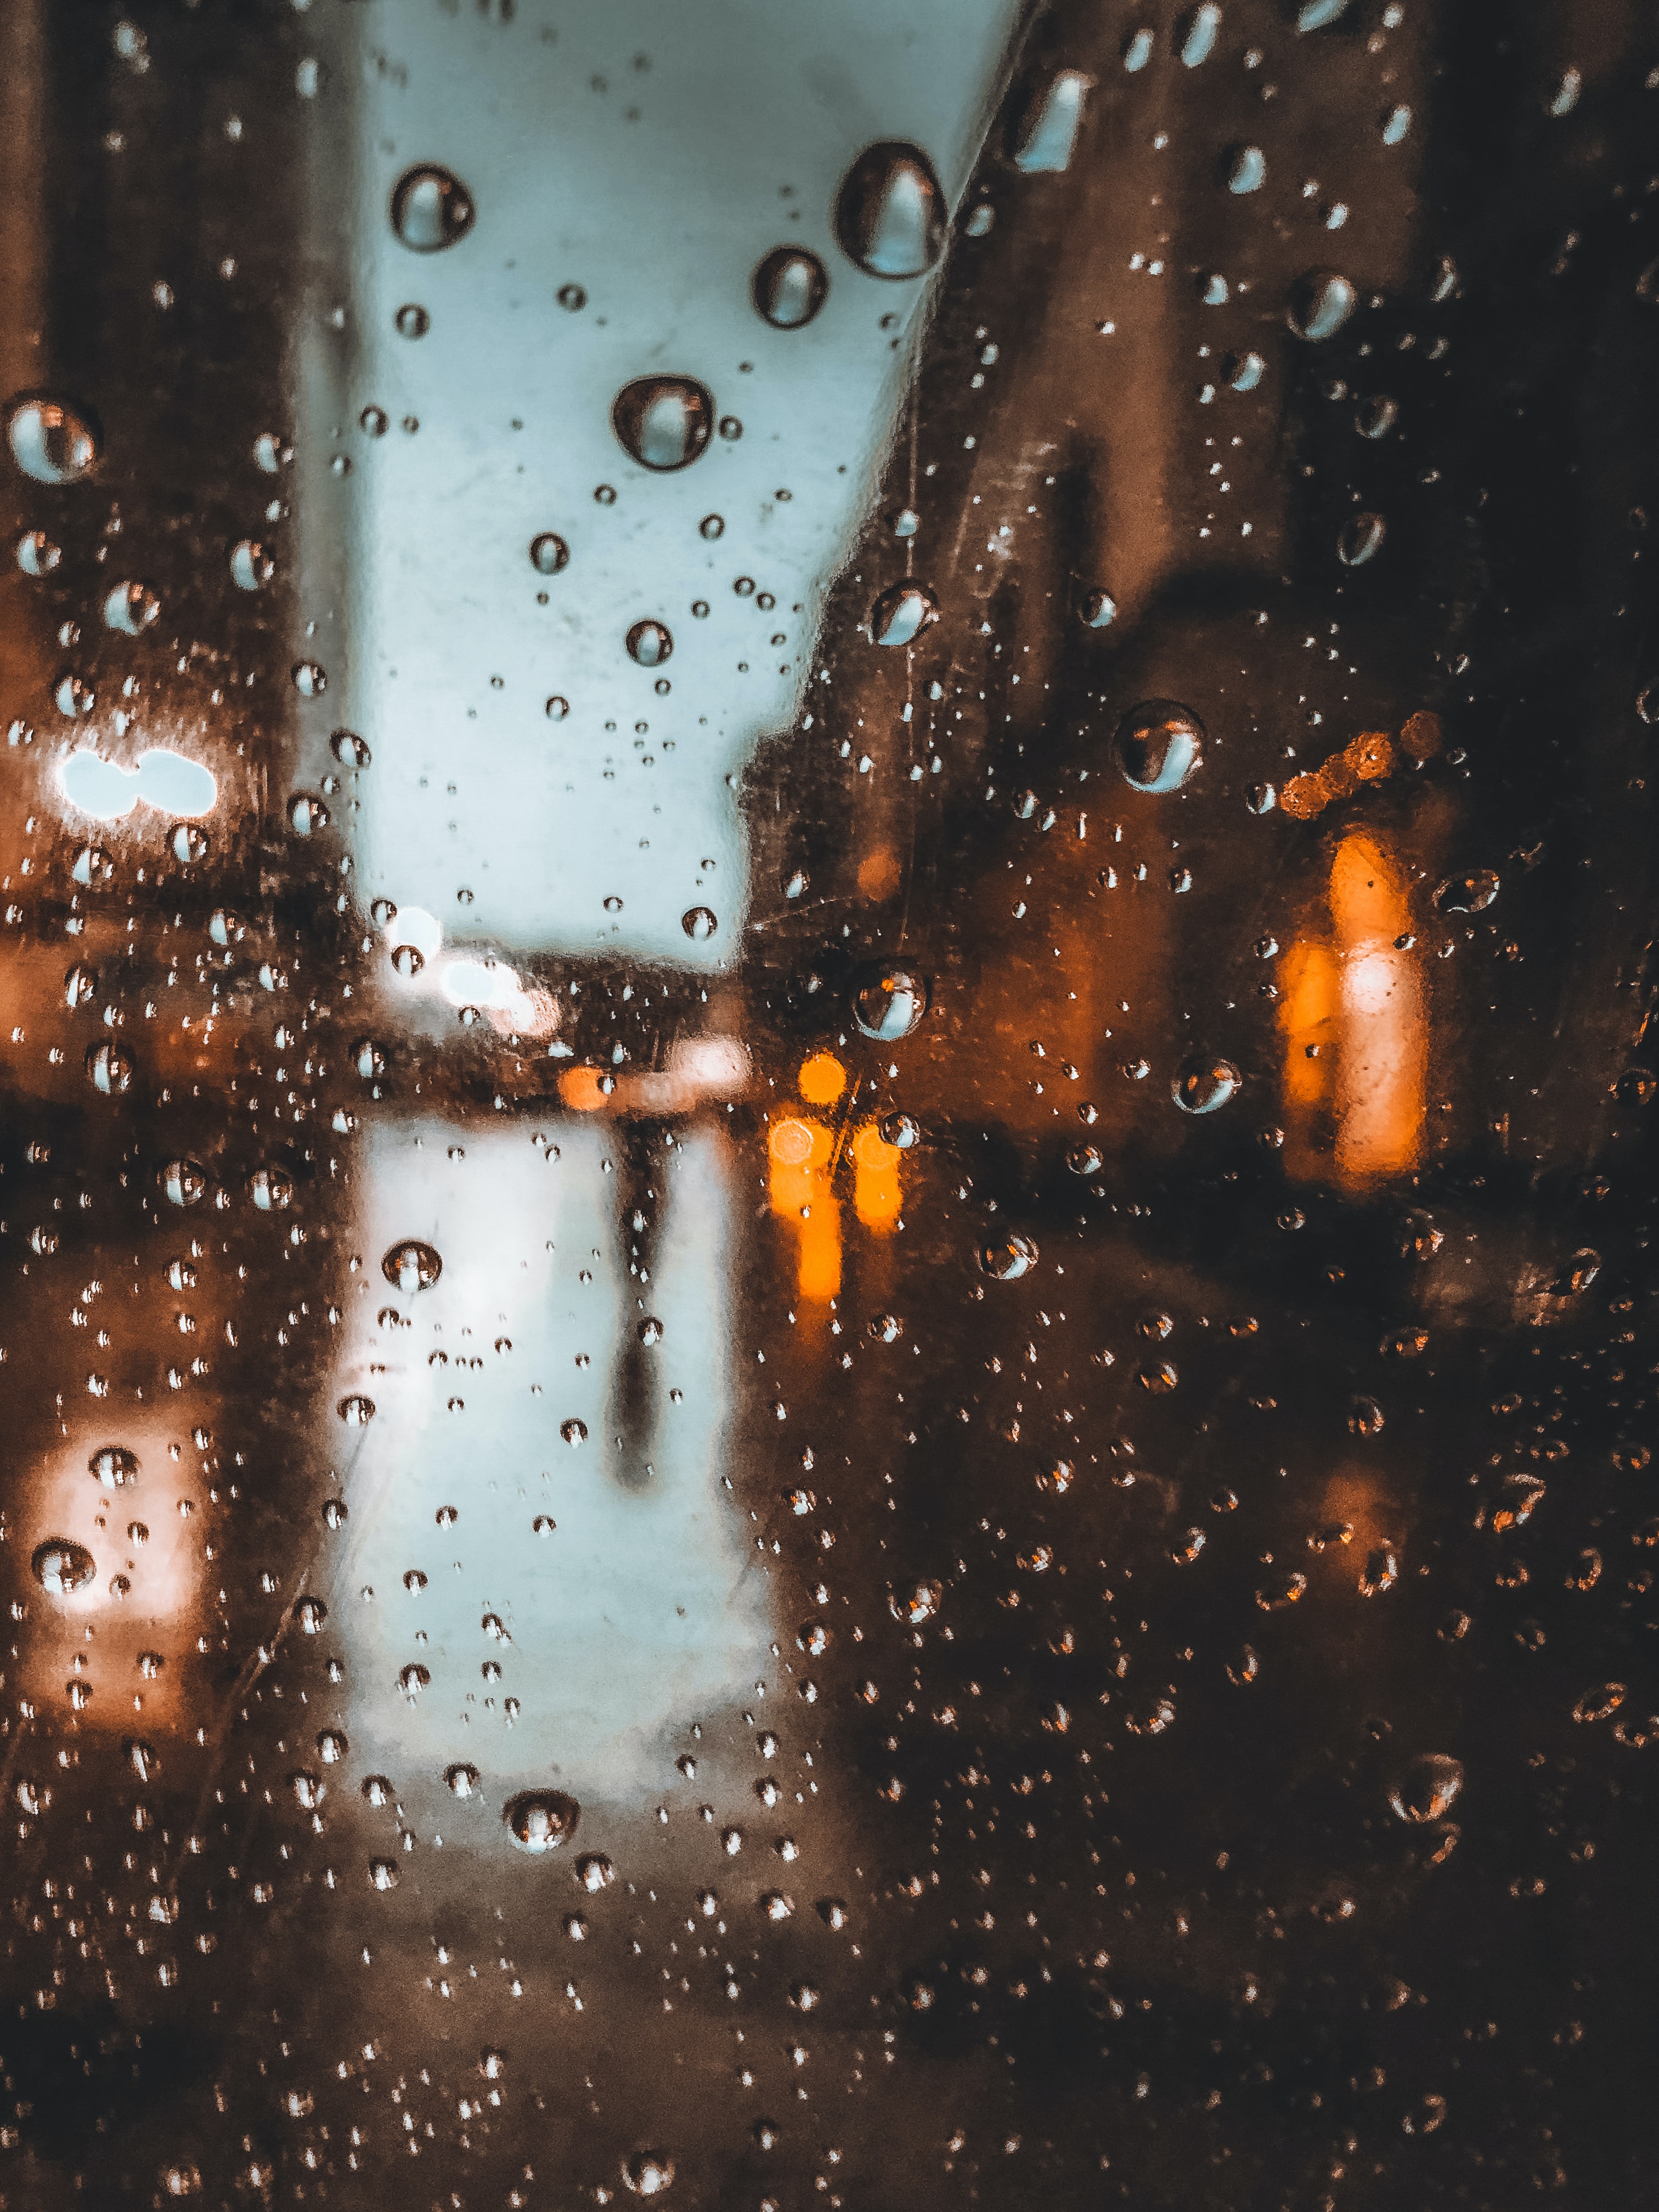 rain, drops, glare, miscellanea, miscellaneous, blur, smooth, glass phone background